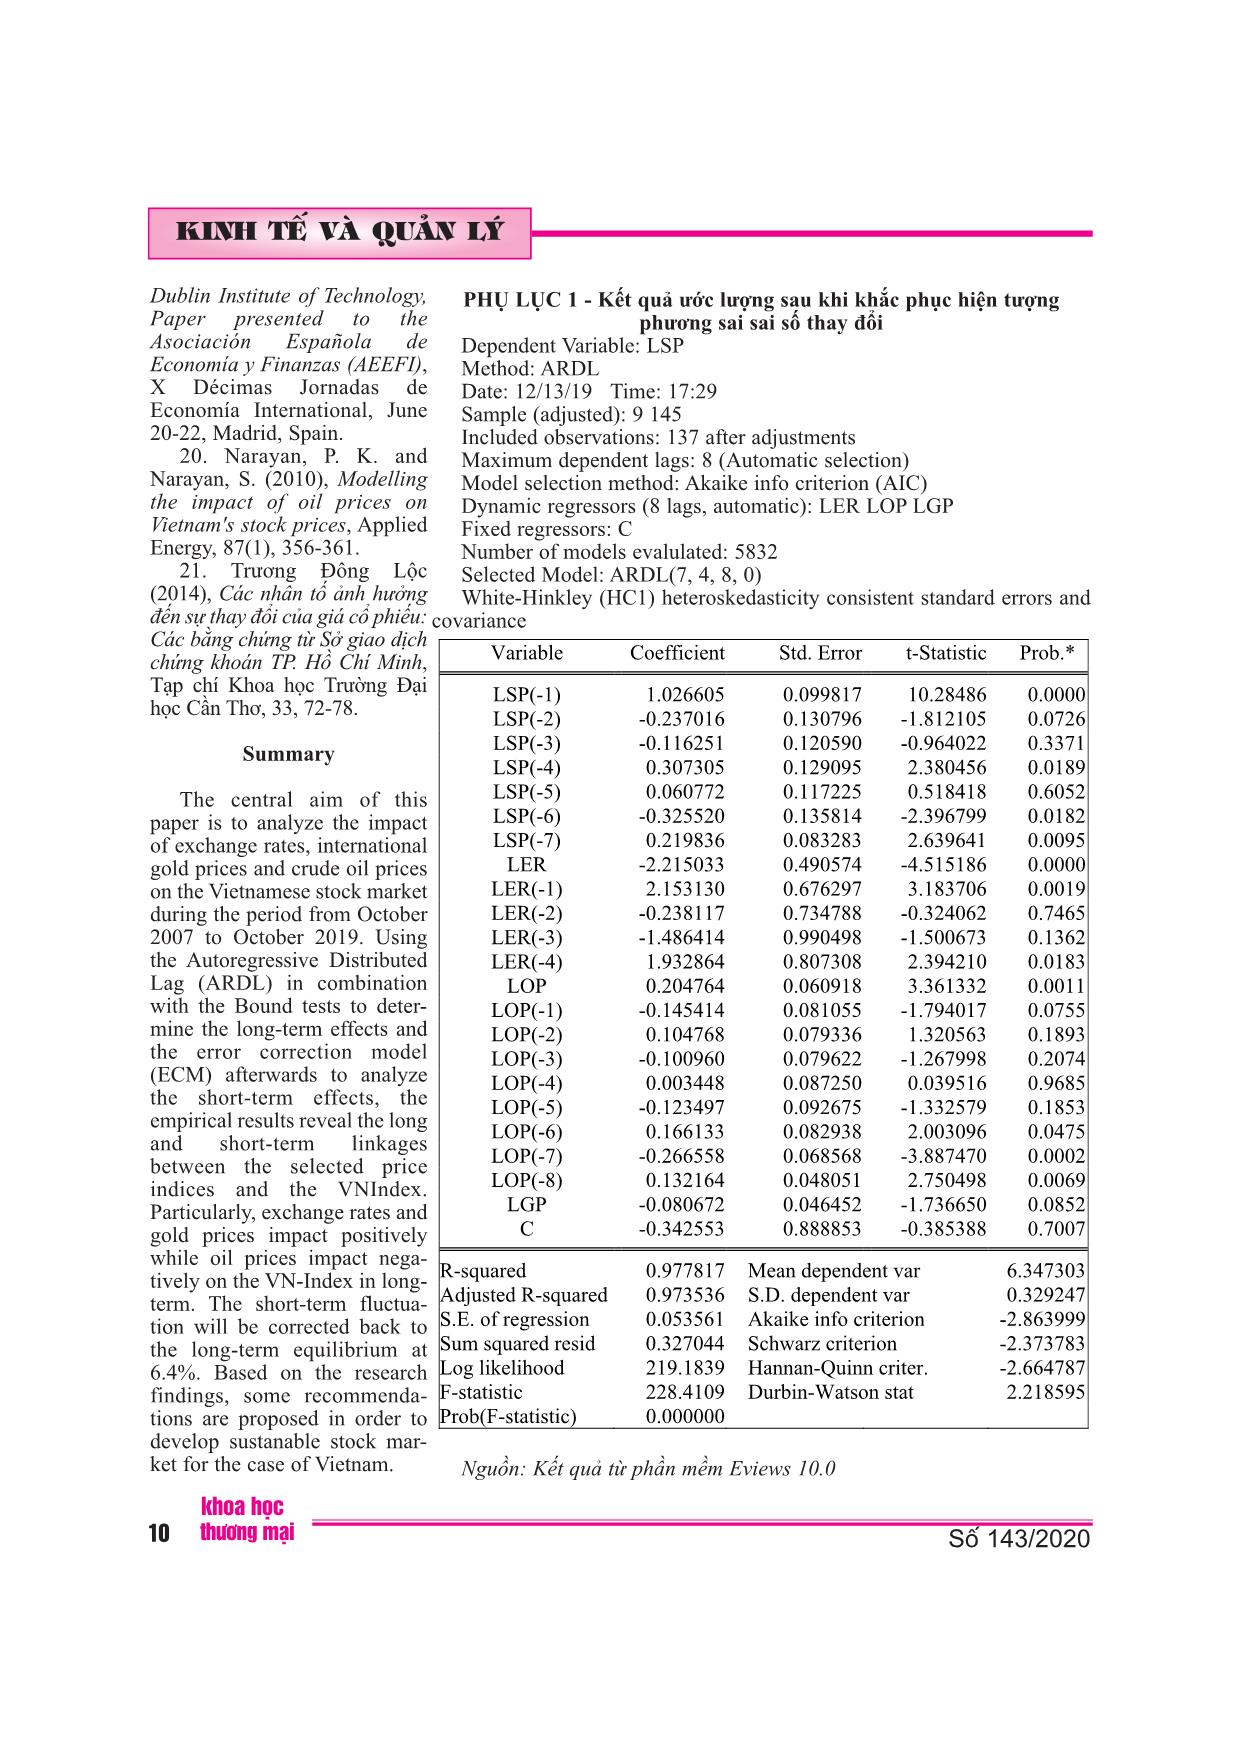 Áp dụng mô hình ardl nghiên cứu tác động của các chỉ số giá đến thị trường chứng khoán Việt Nam trang 10